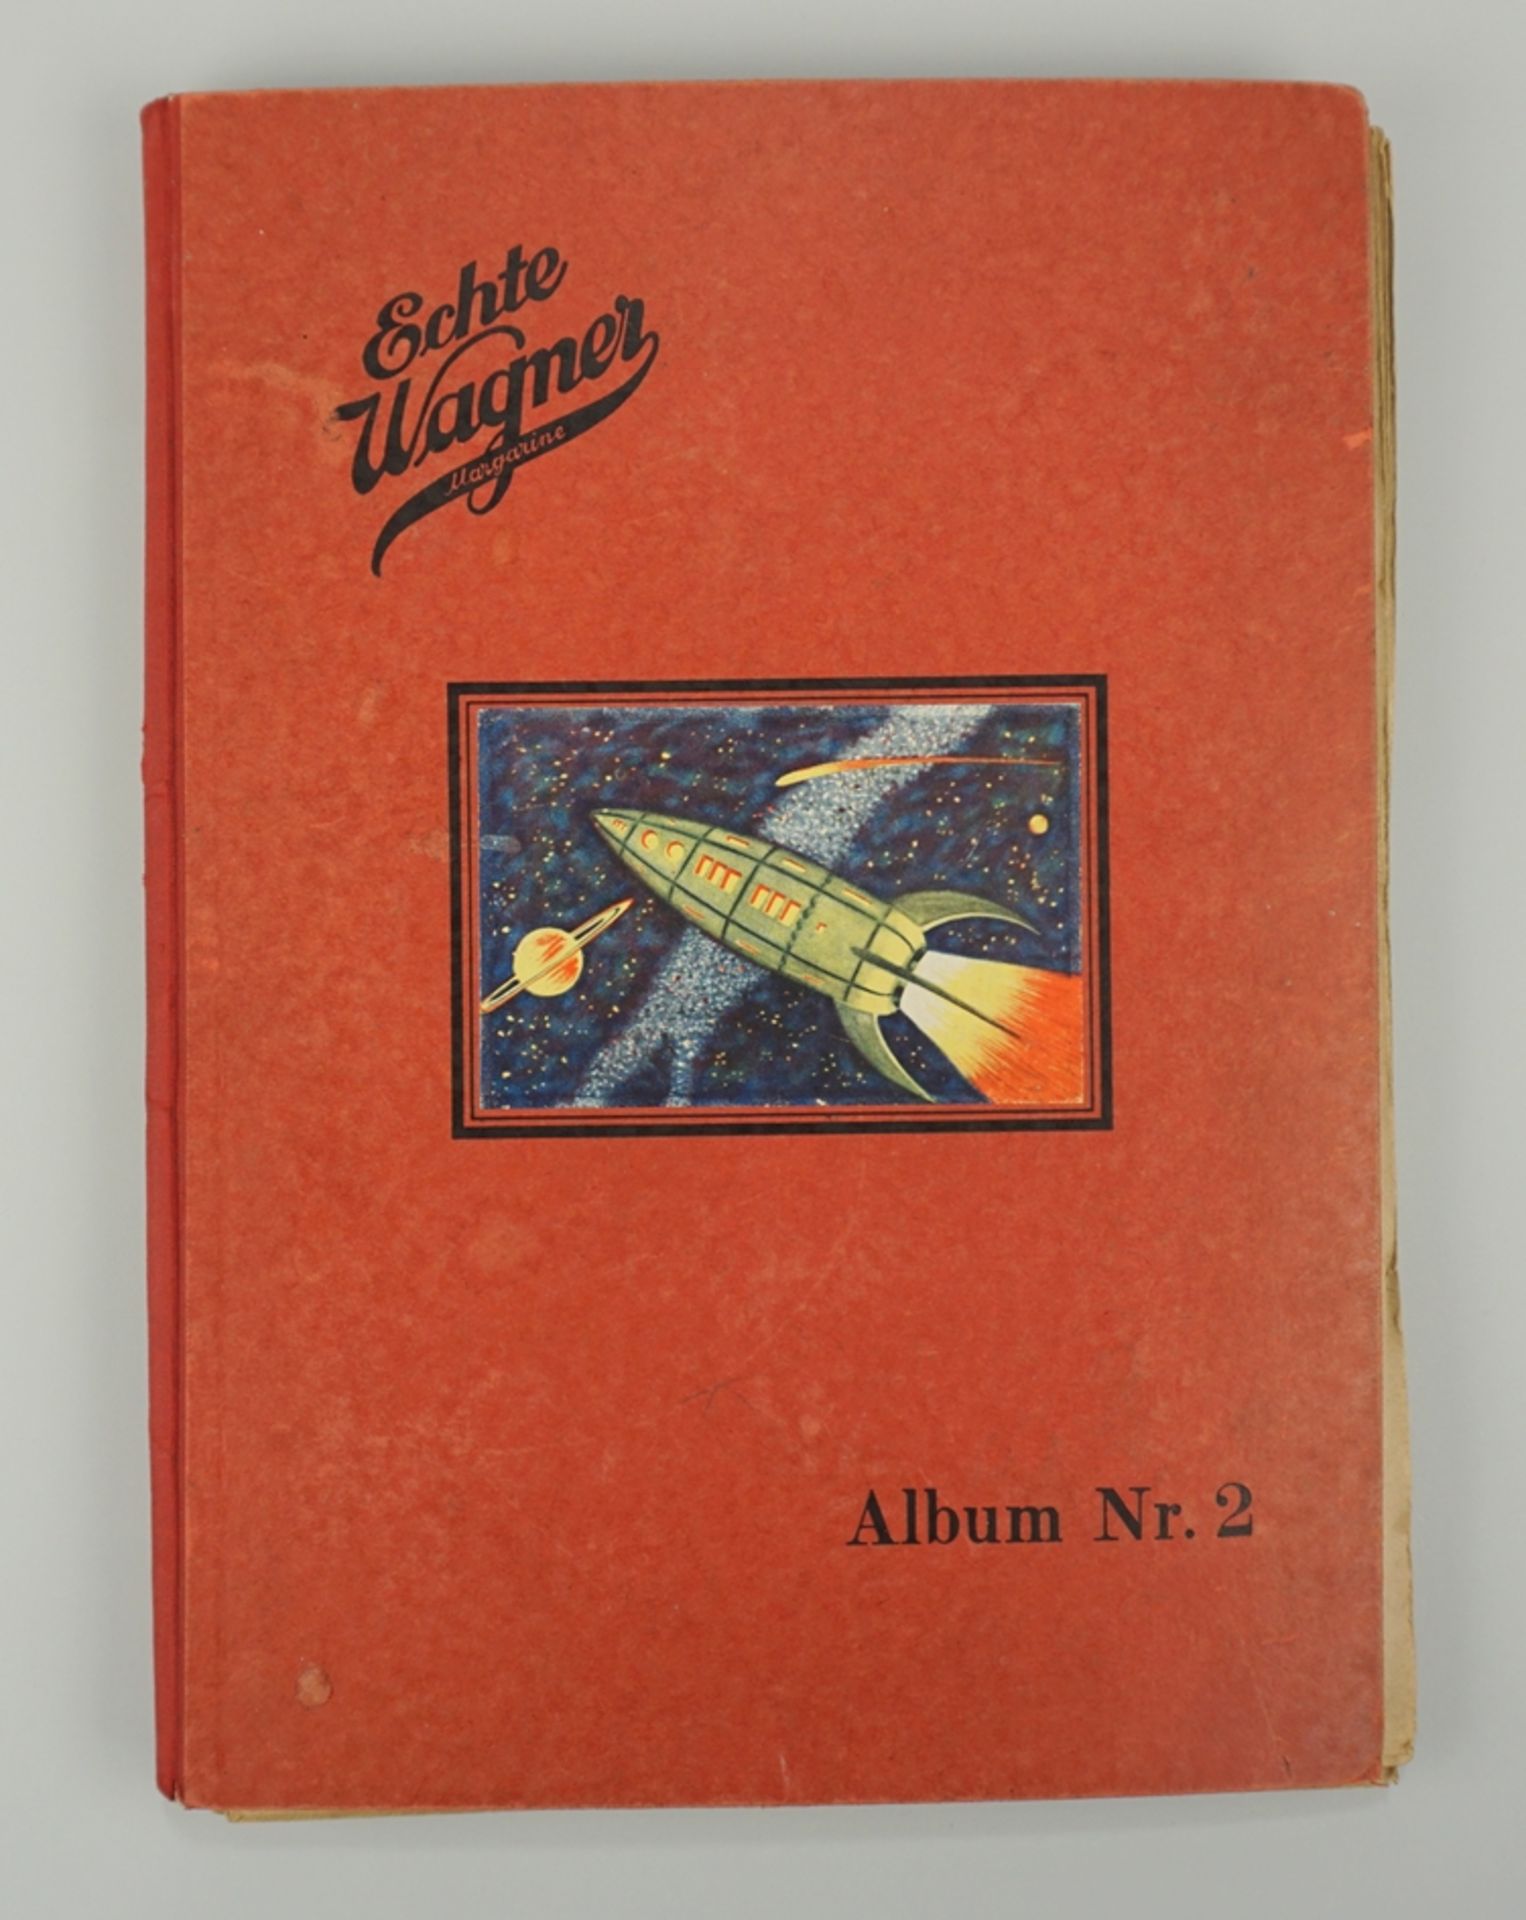 "Echte Wagner Margarine - Album 2", Sammelbilderalbum, 1929